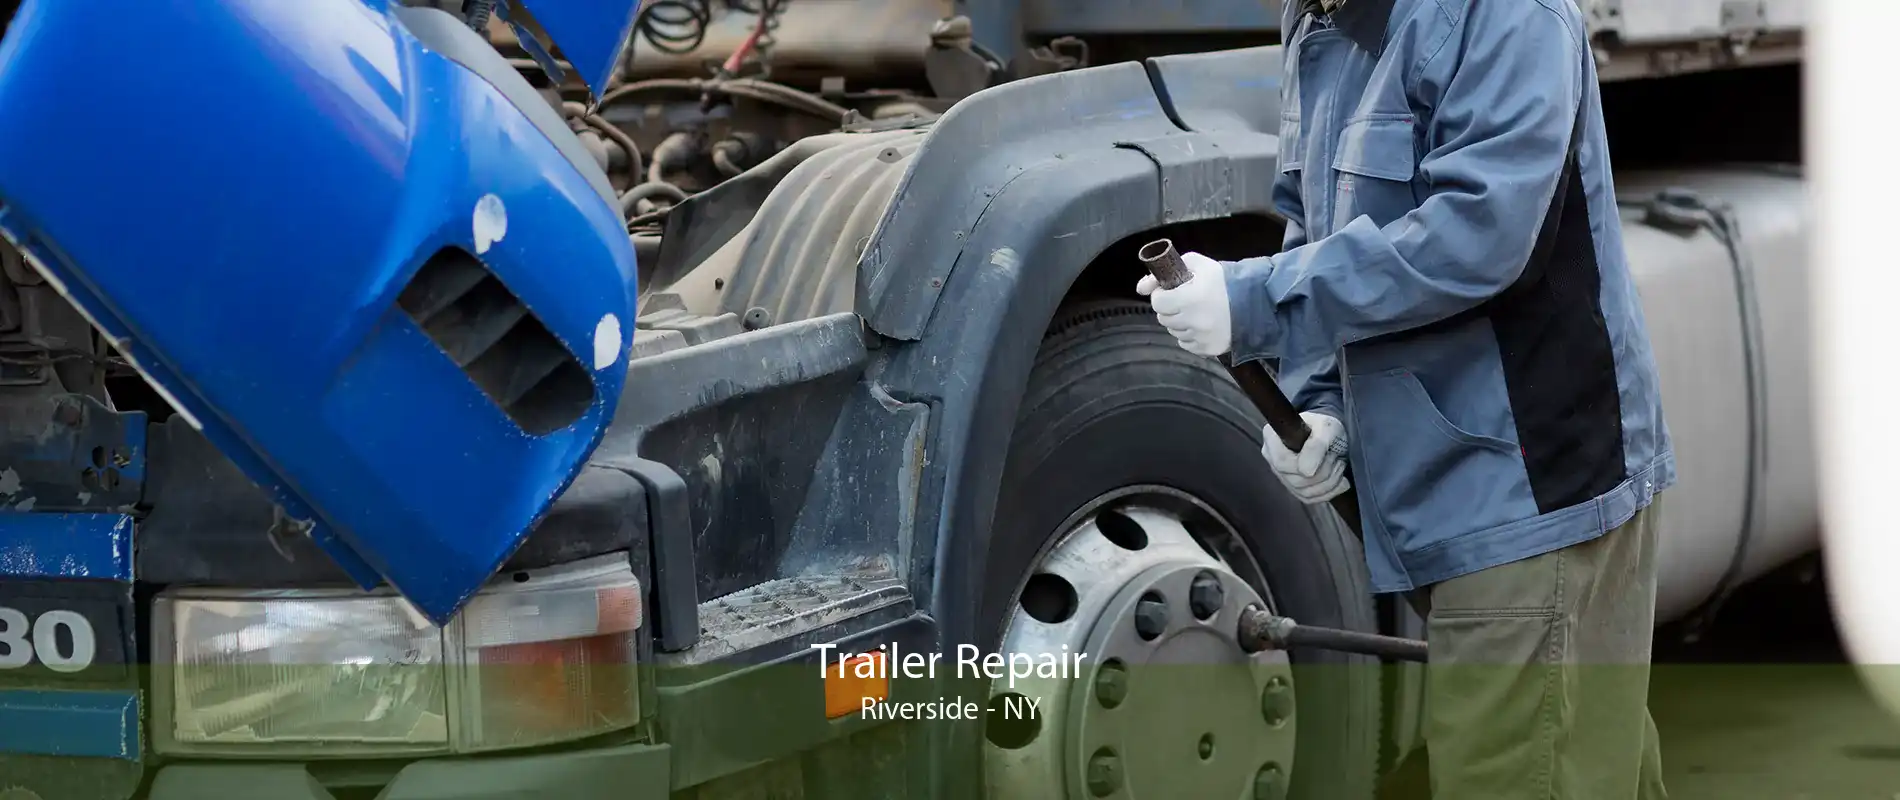 Trailer Repair Riverside - NY